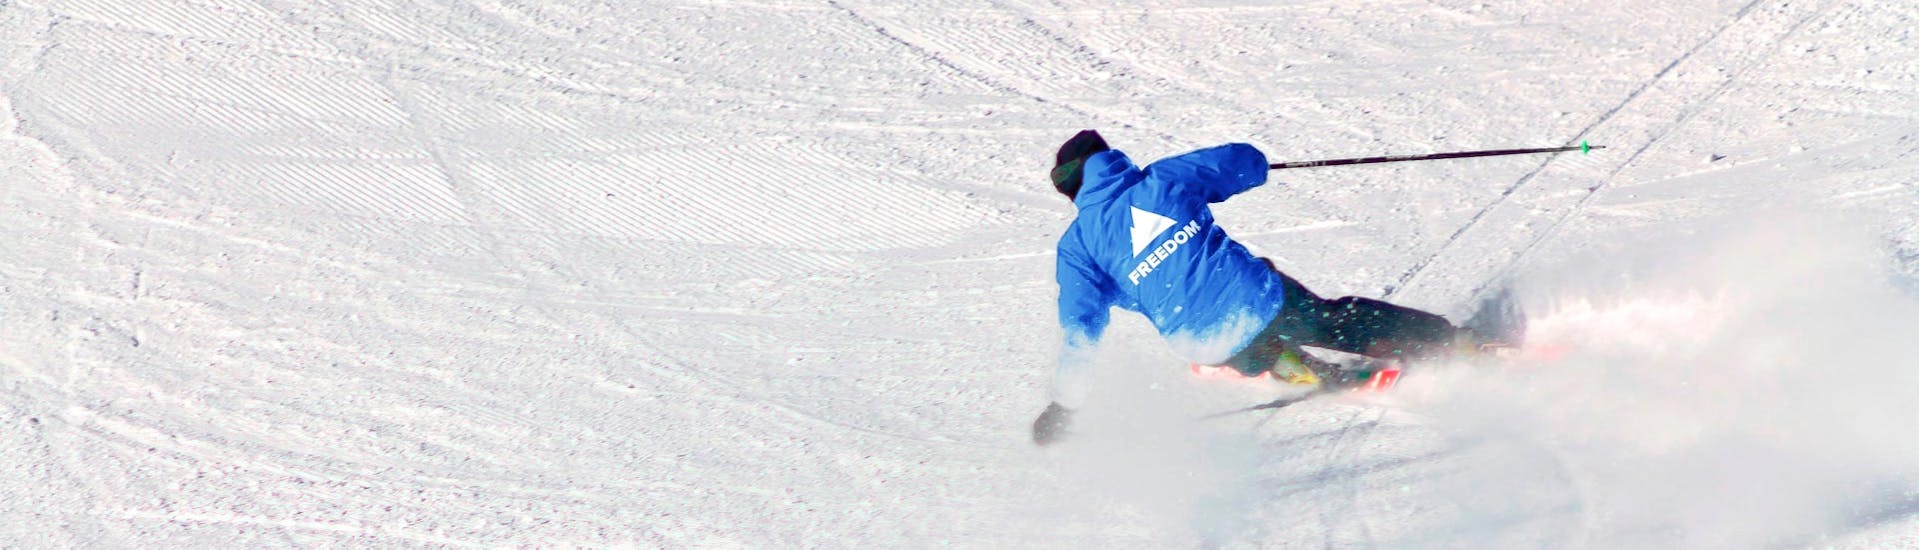 Un esquiador desciende por una pista durante las Clases particulares de esquí para adultos con Freedom Snowsports Mont Blanc.